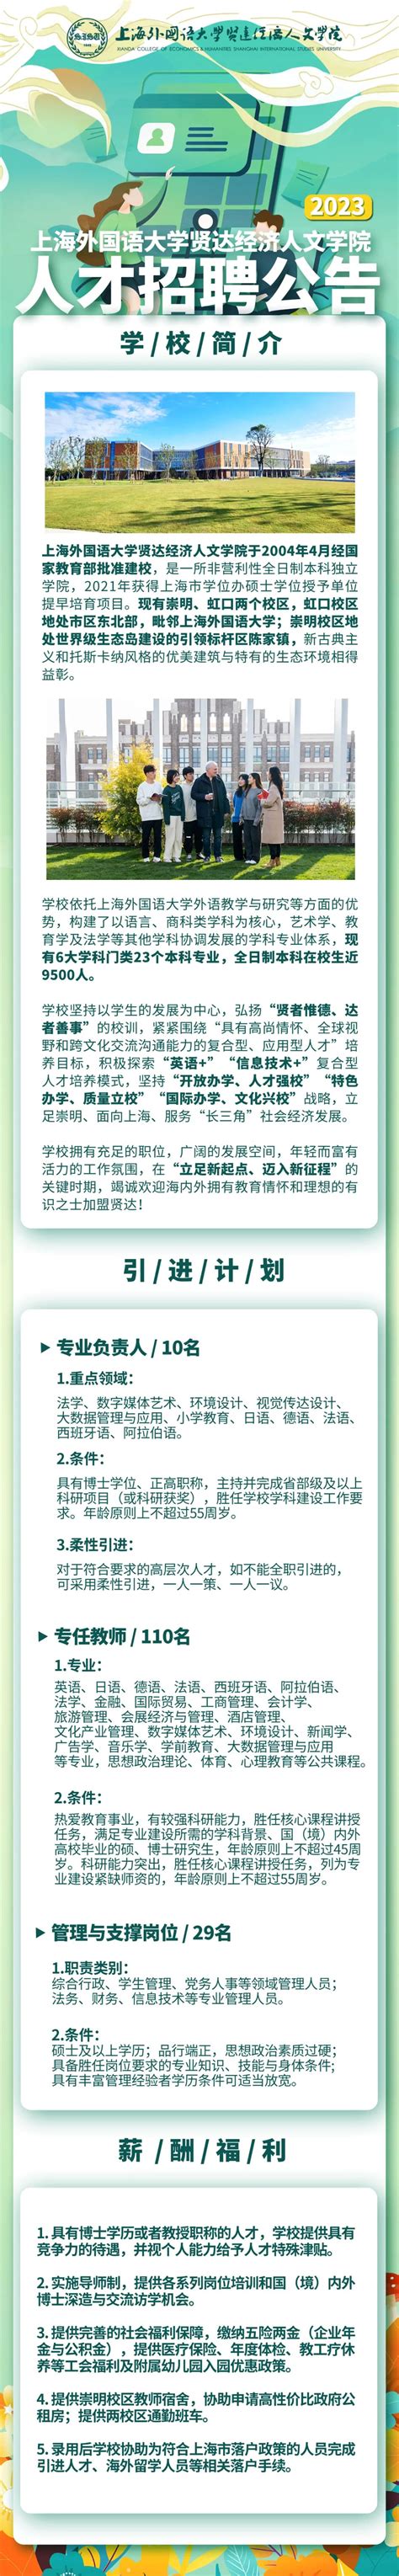 上海外国语大学贤达经济人文学院2023年人才招聘开始啦- 上海市崇明区人民政府